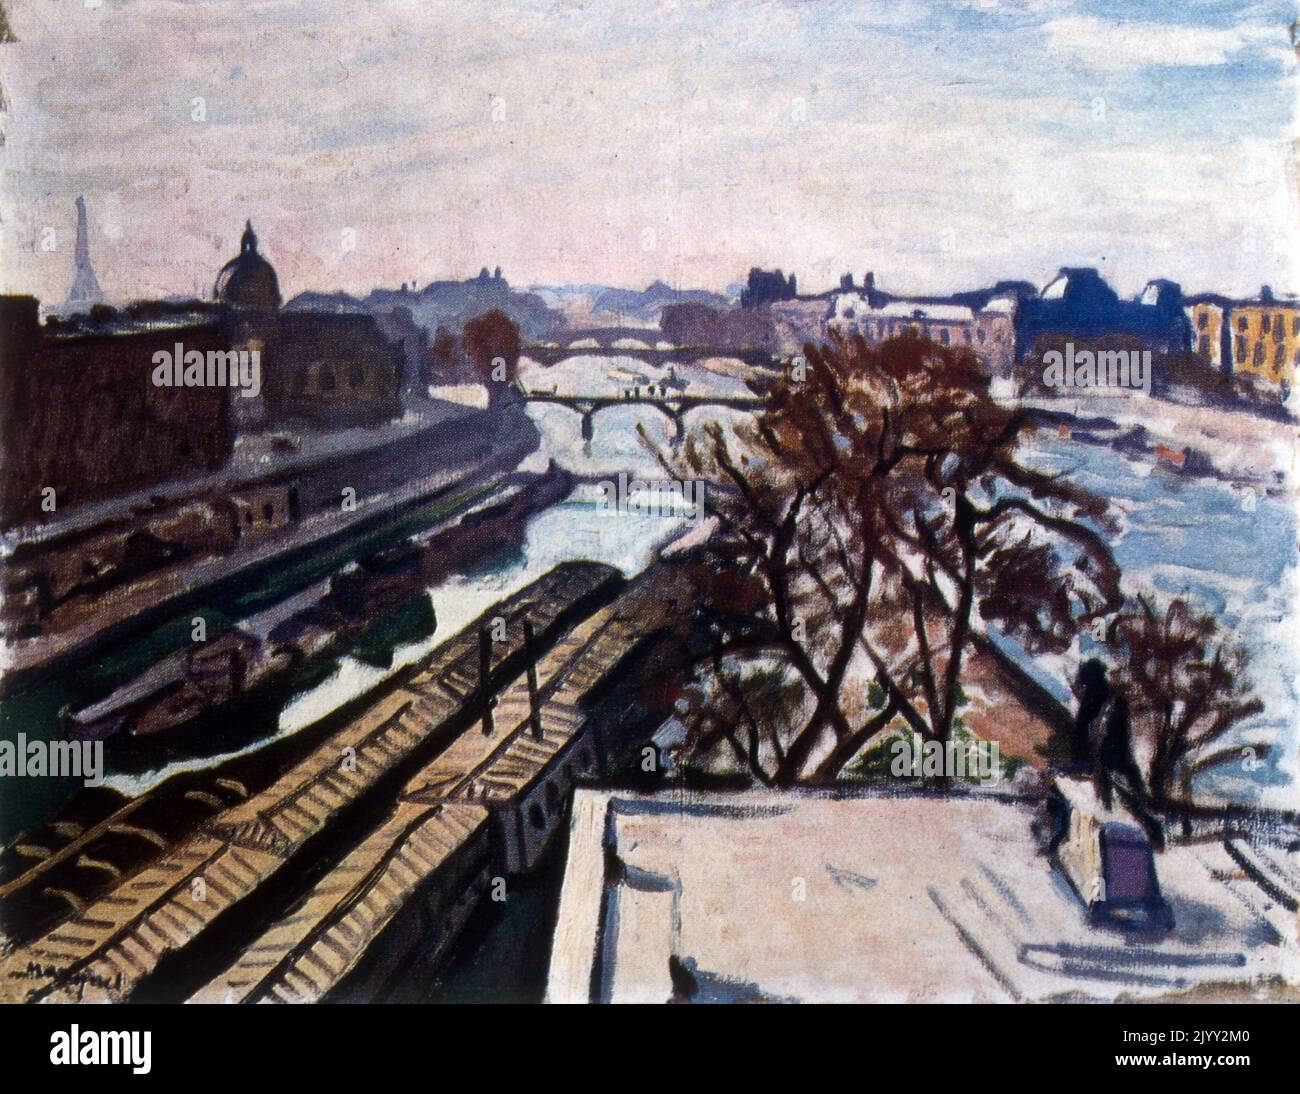 Blick auf die seine. Paris 1907, von Albert Marquet (1875 - 1947), französischer Maler, in Verbindung mit der Fauvist-Bewegung. Öl auf Leinwand Stockfoto